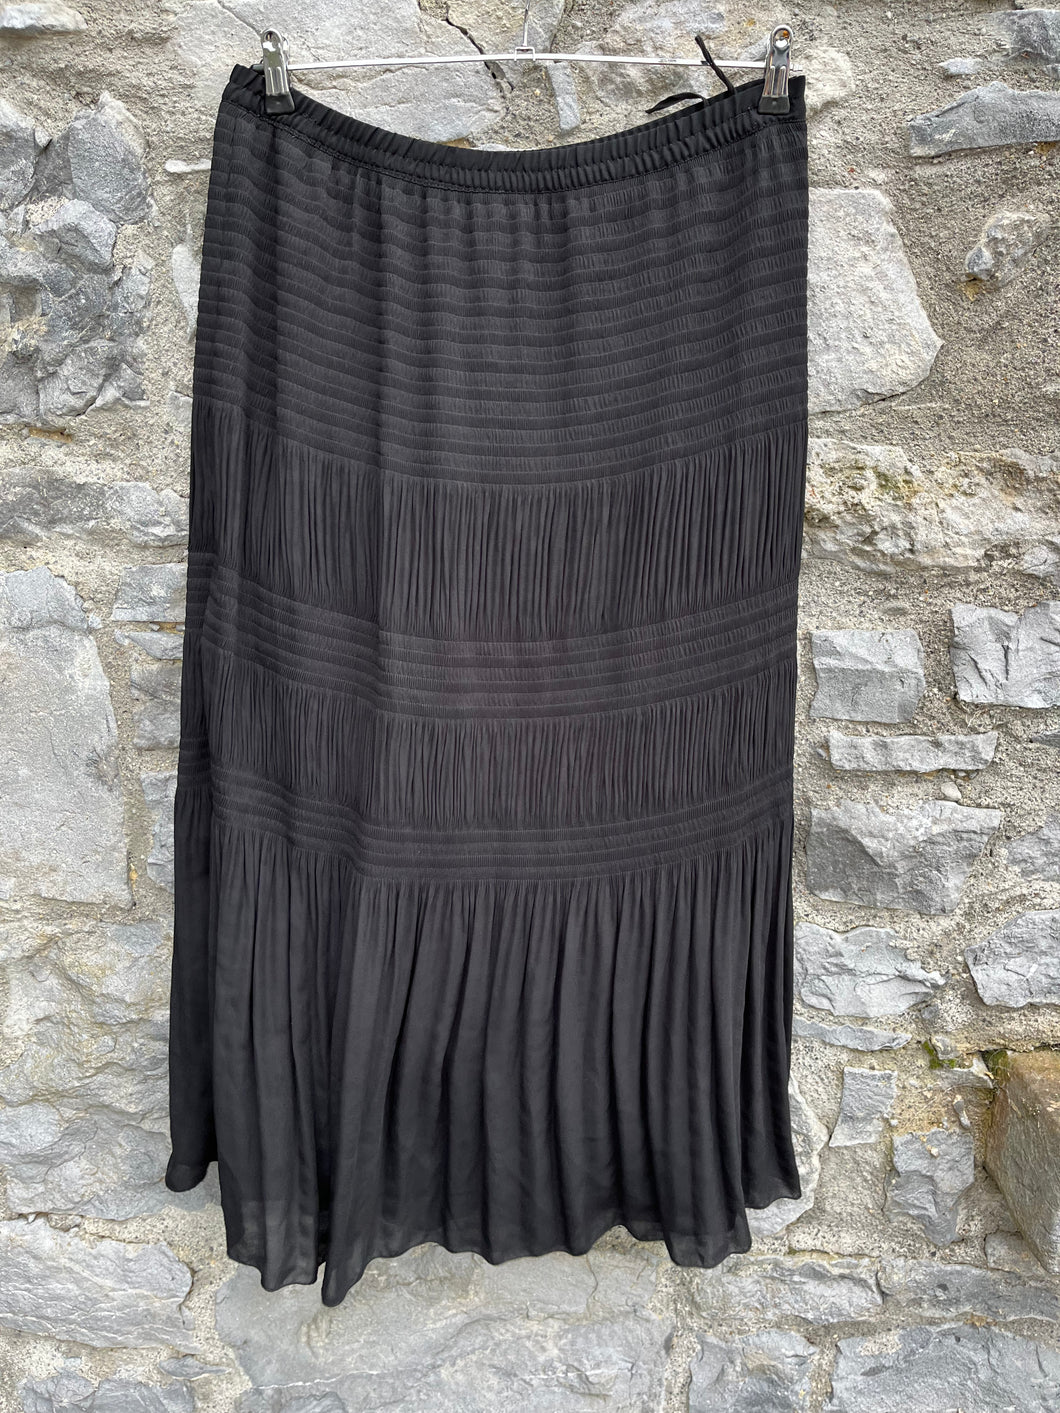 90s Black wrinkles maxi skirt uk 16-18